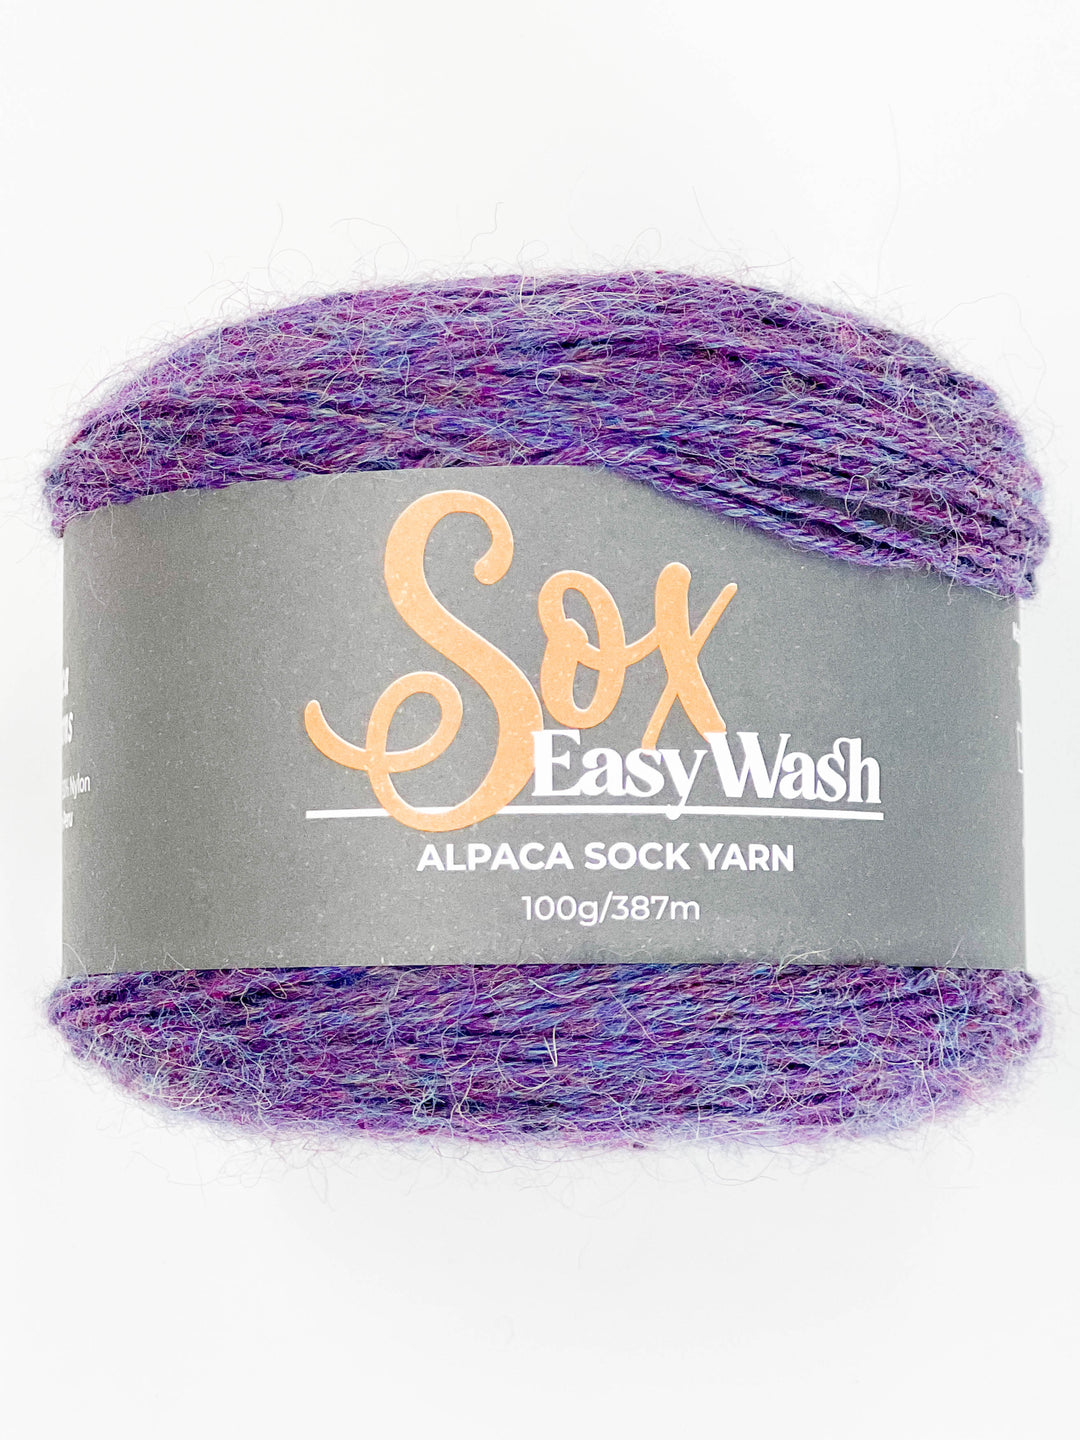 Sox Easy Wash Alpaca Sock